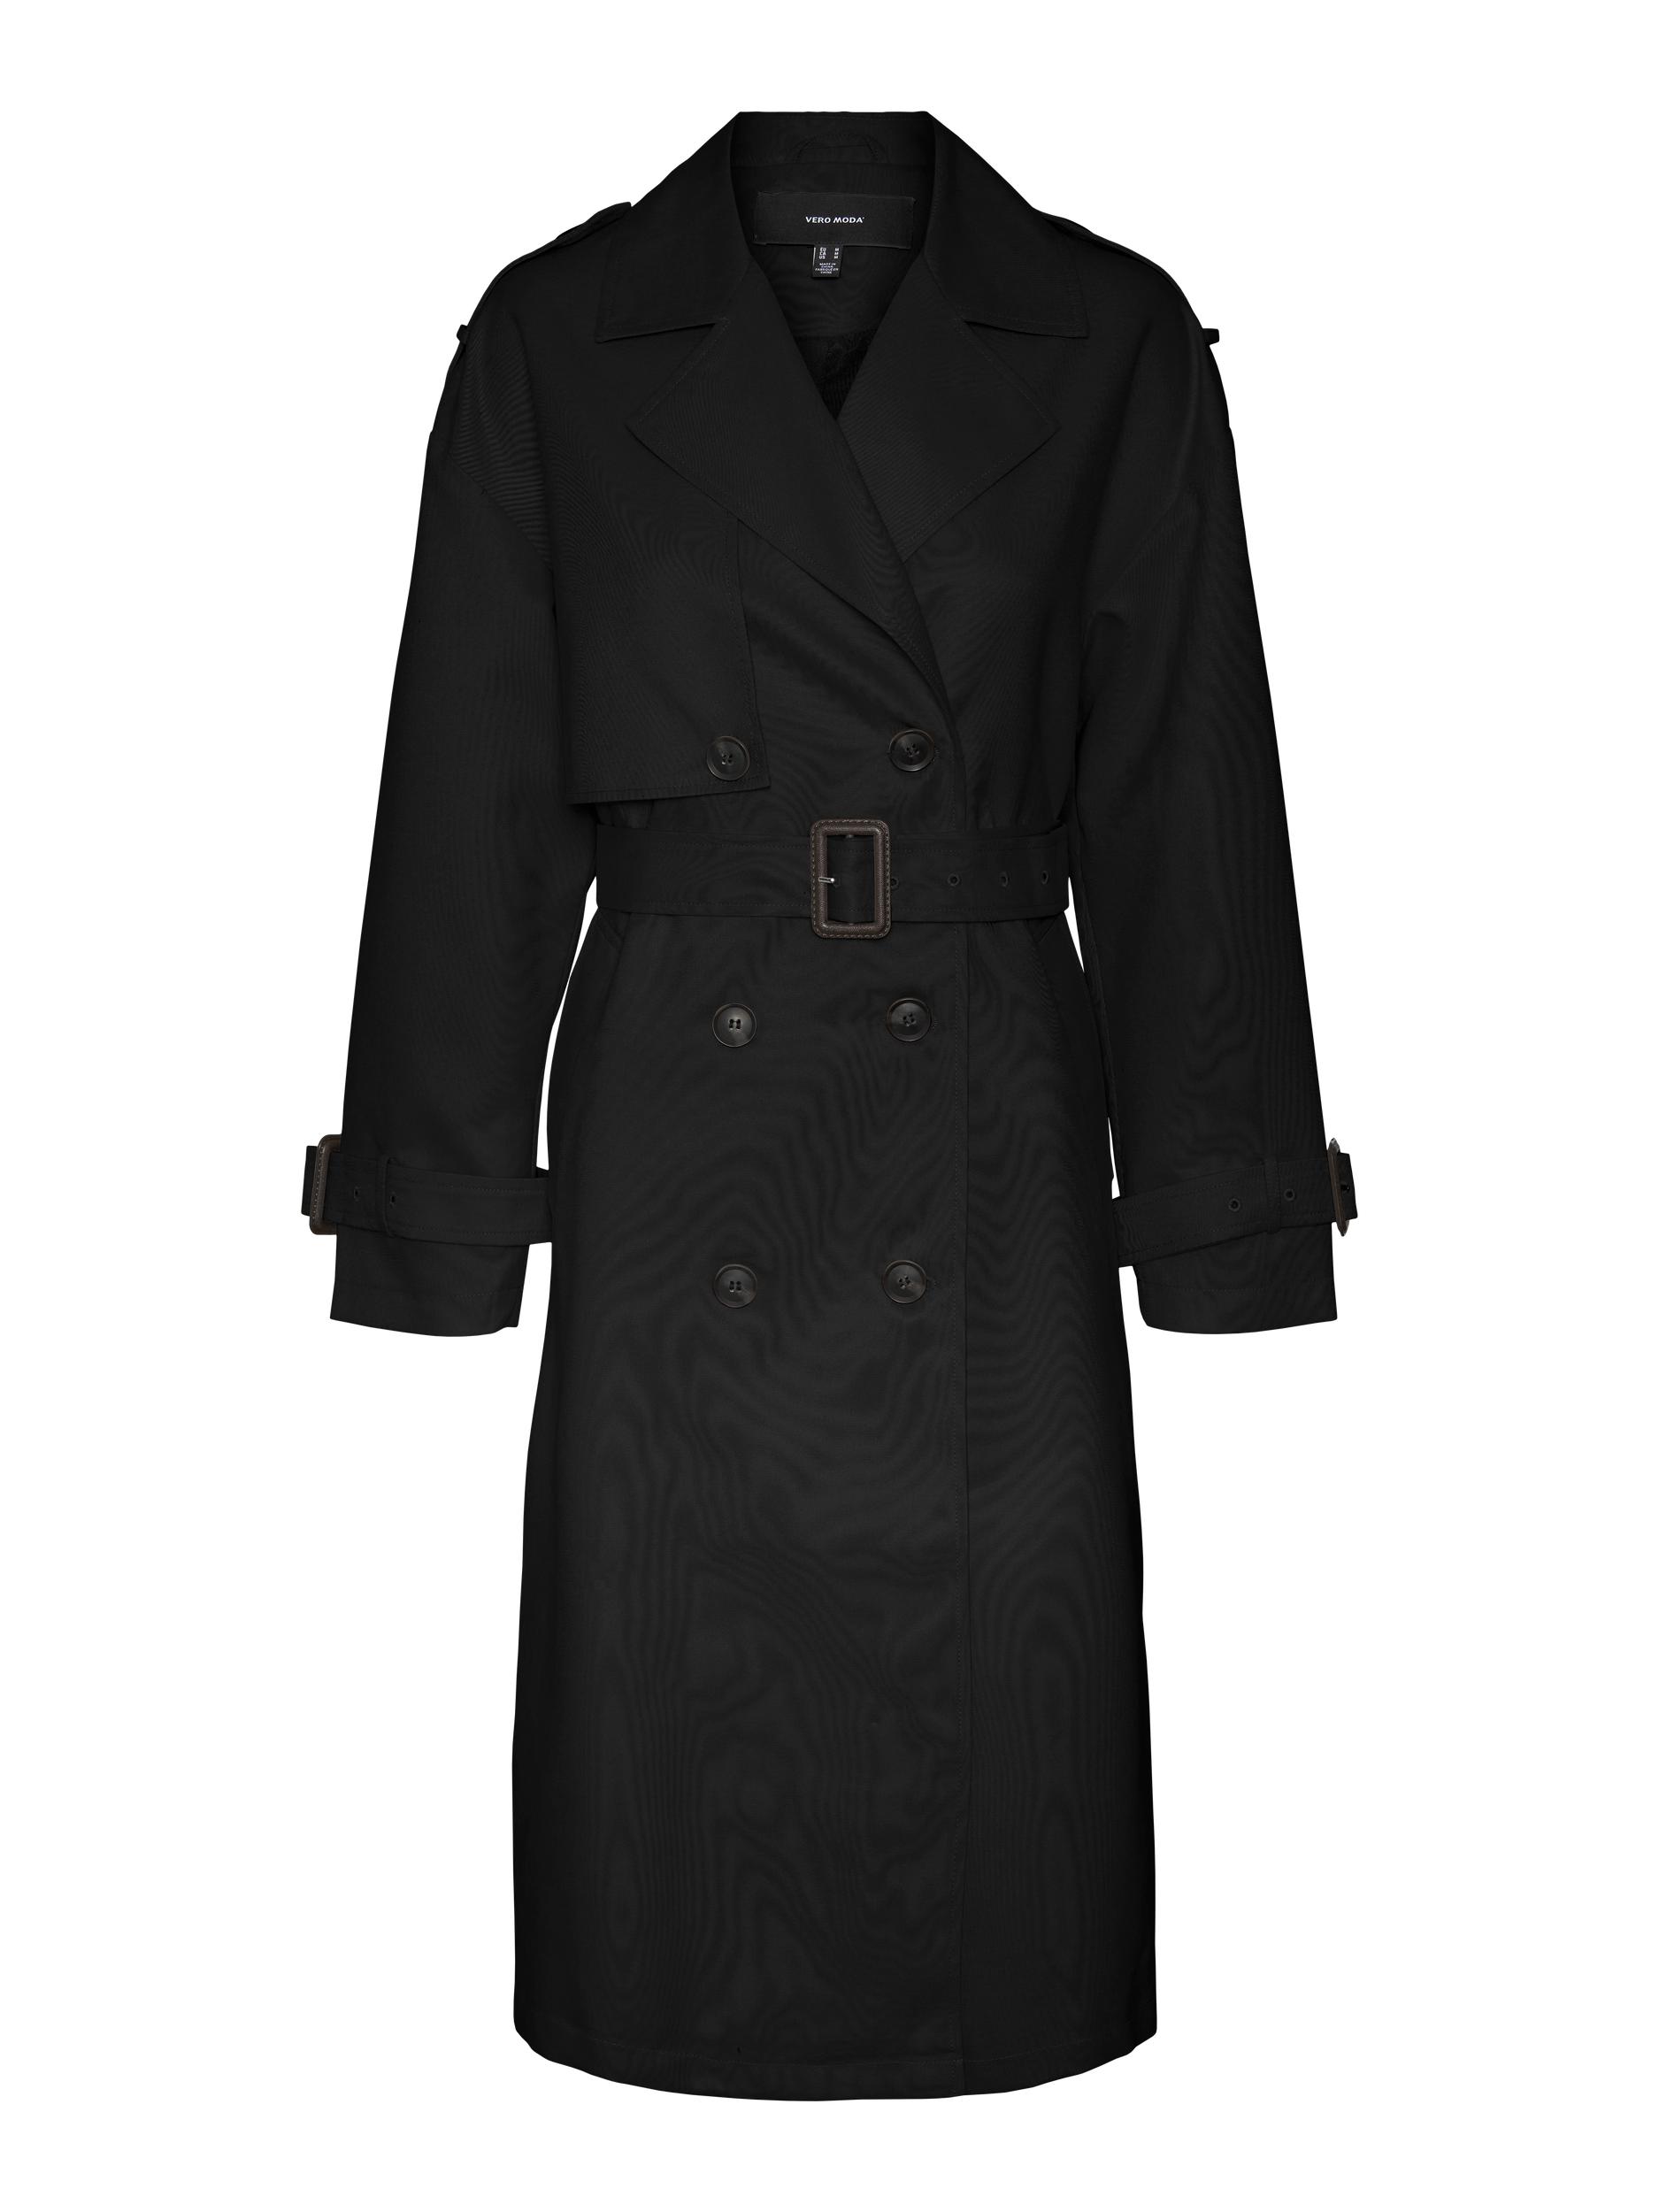 Kobiety Odzież VERO MODA Płaszcz przejściowy Arden w kolorze Czarnym 